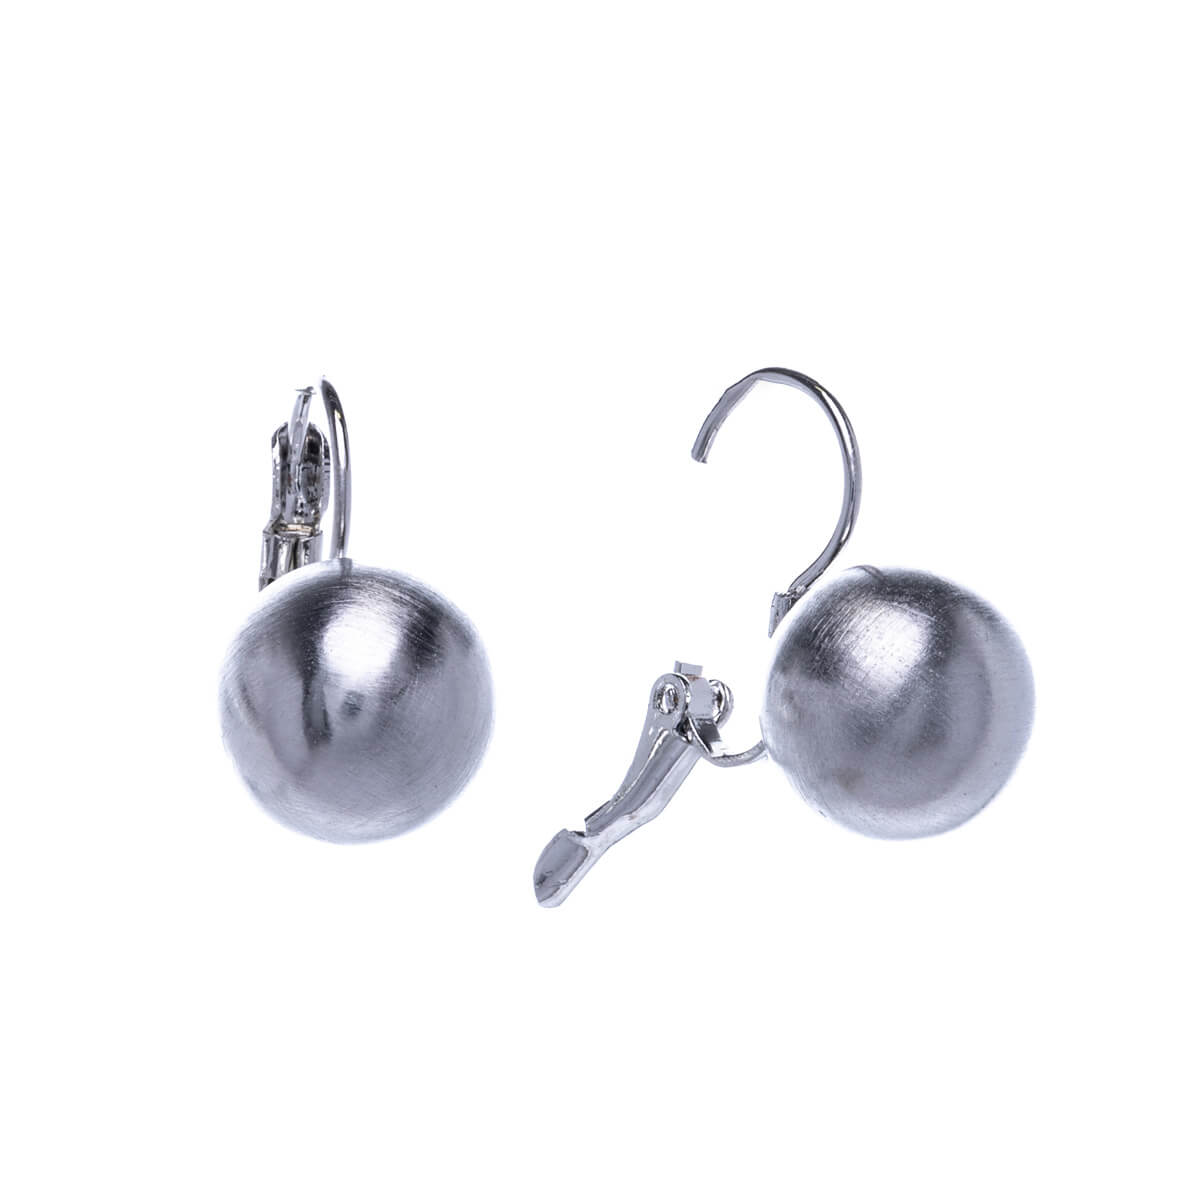 Dangling metal pearl earrings 12mm